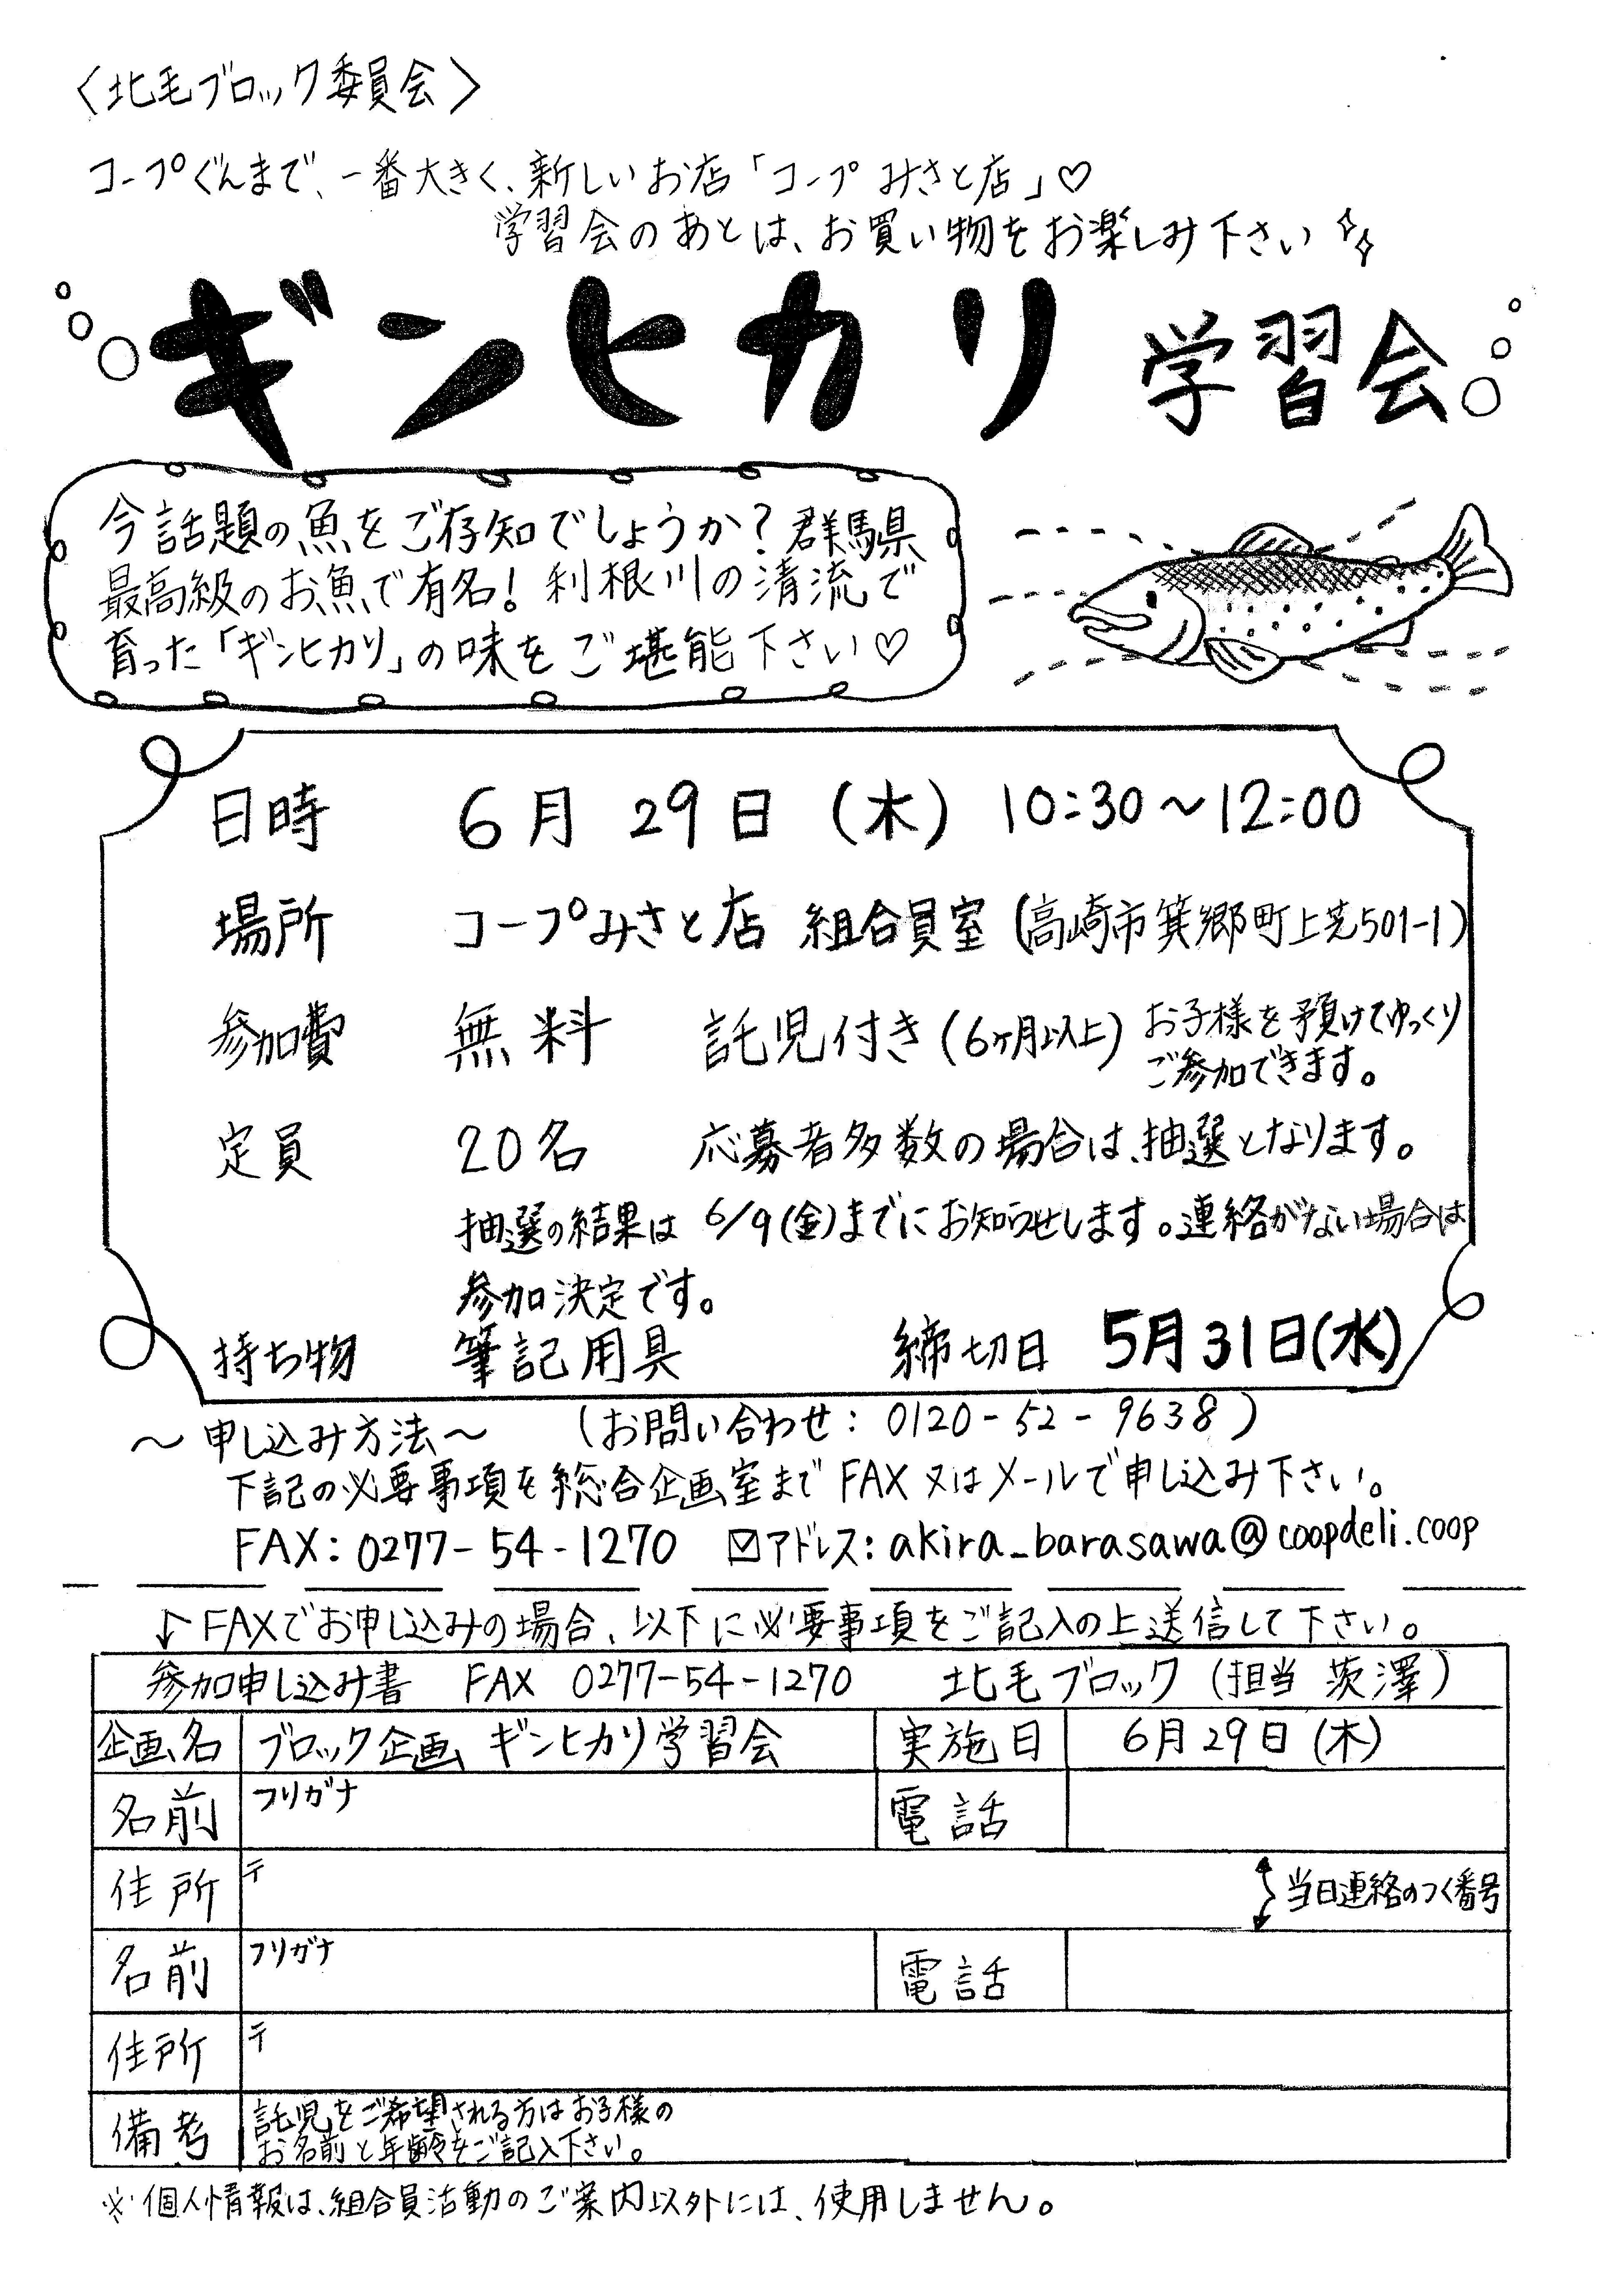 北毛ブロック委員会主催「ギンヒカリ学習会」・6/29(木)